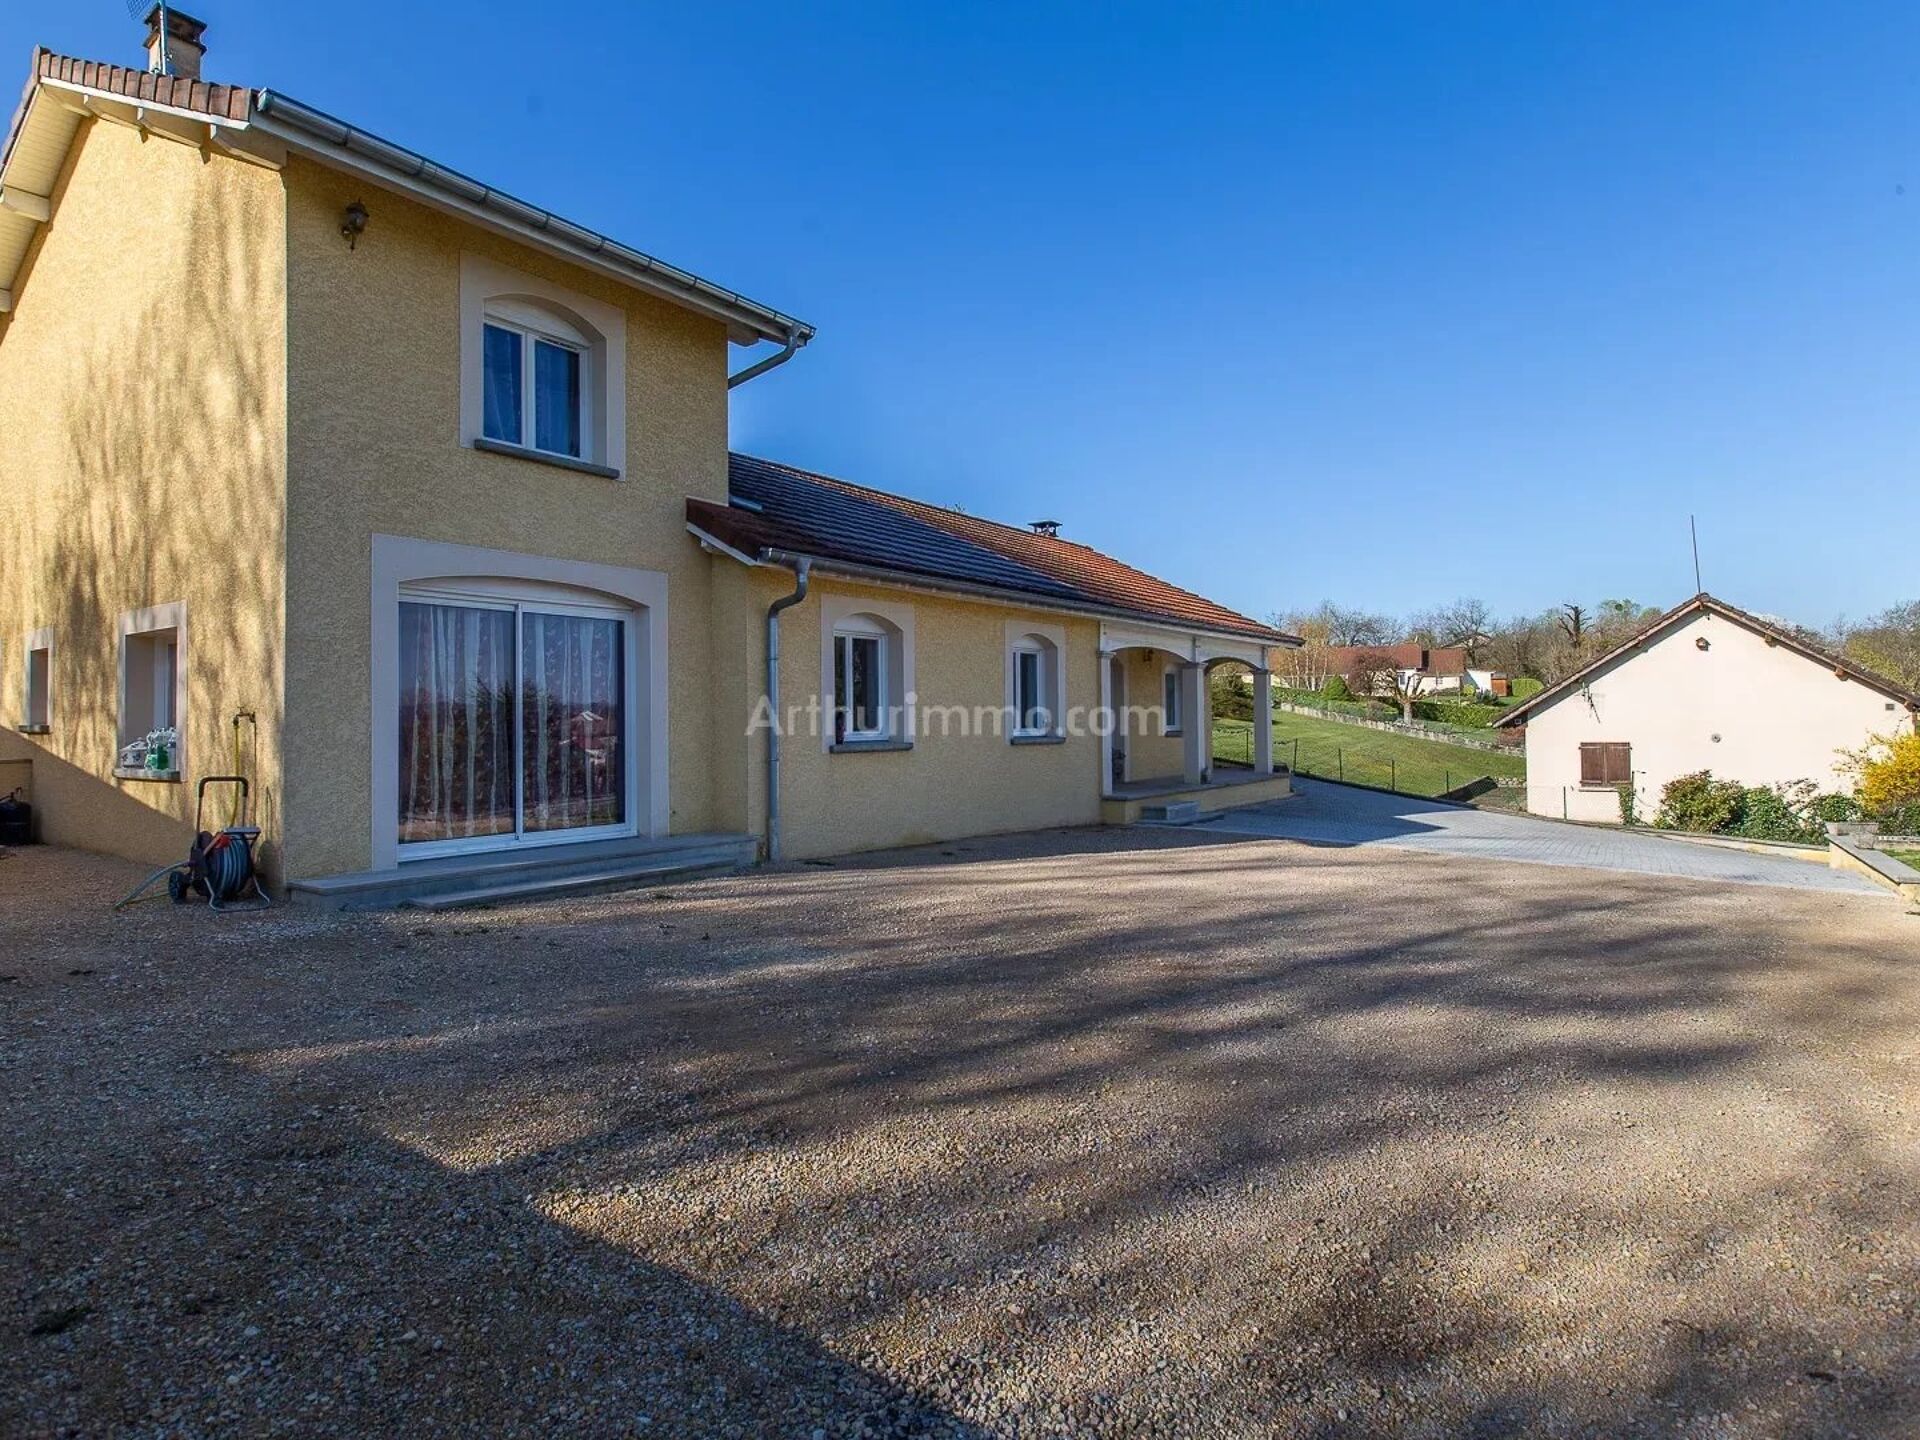 Vente Maison 160m² 7 Pièces à Montalieu-Vercieu (38390) - Arthurimmo